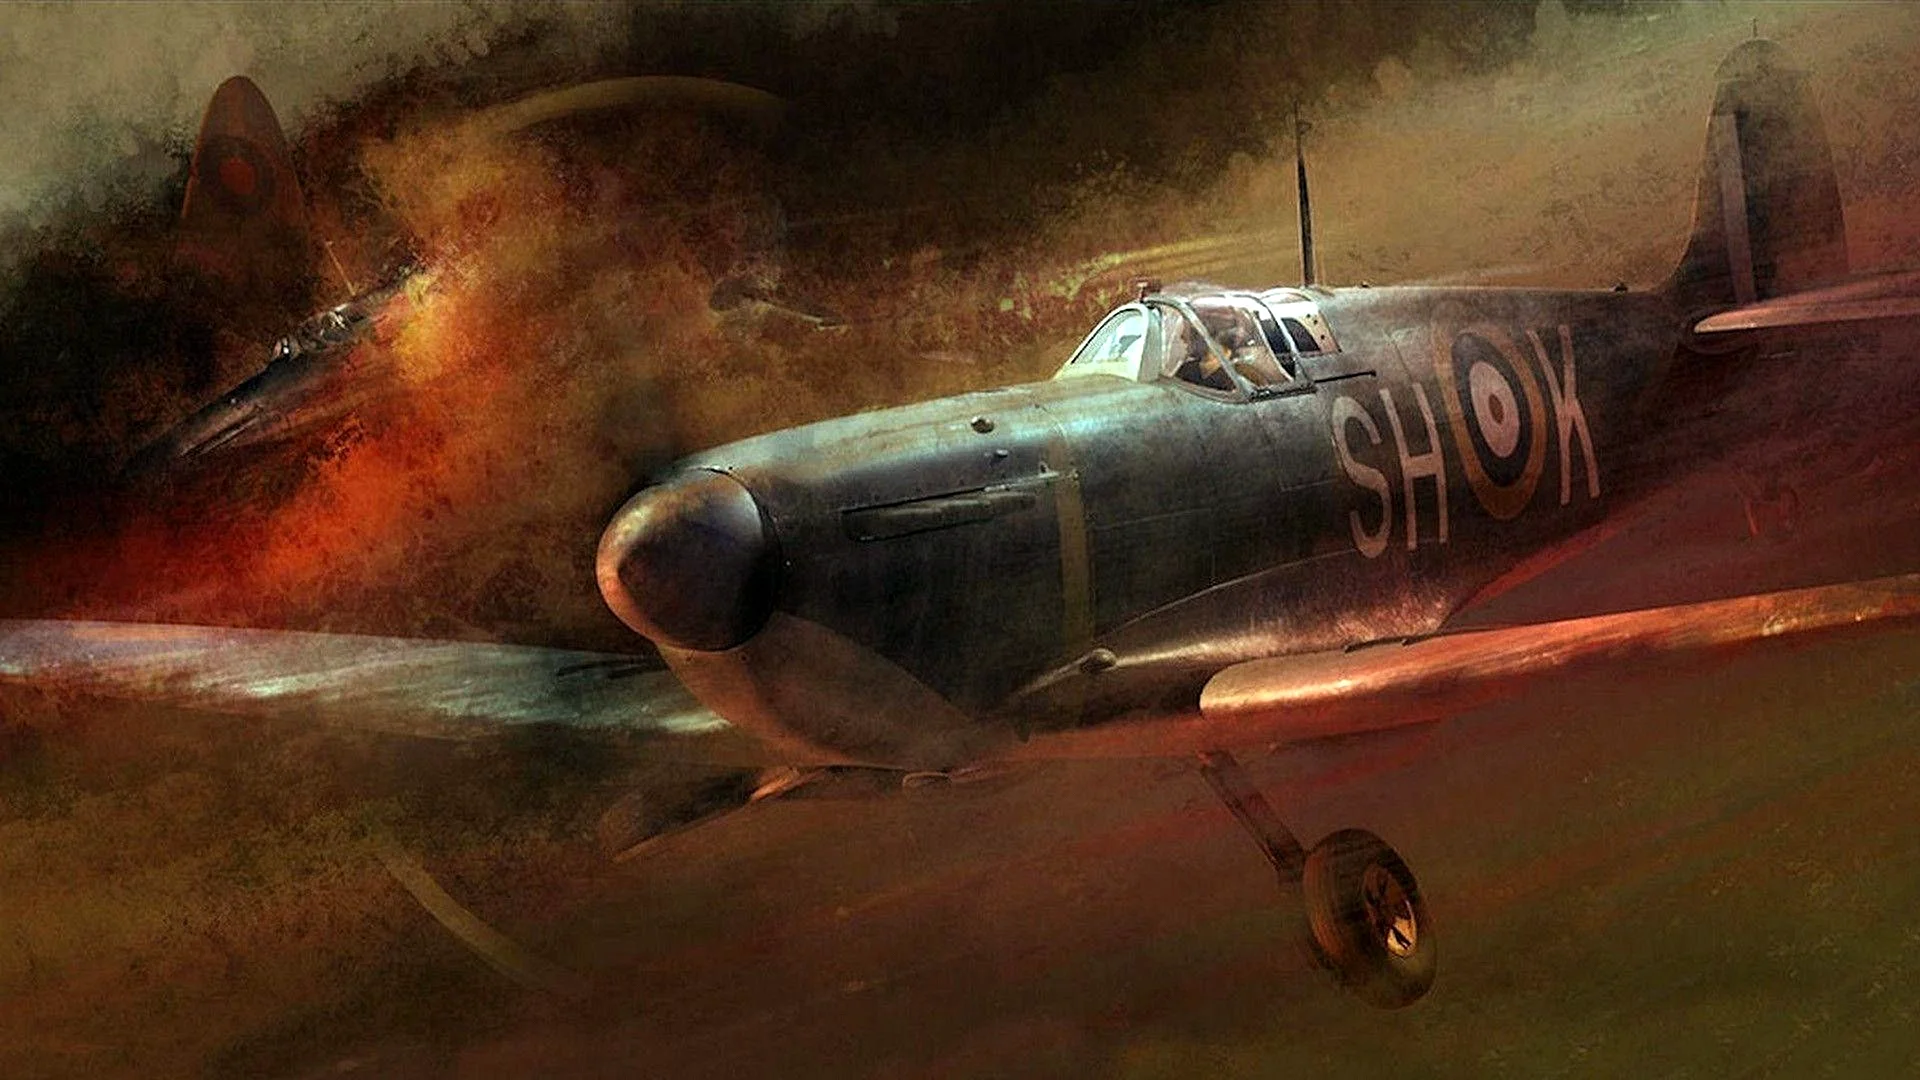 Spitfire Artworks Wallpaper